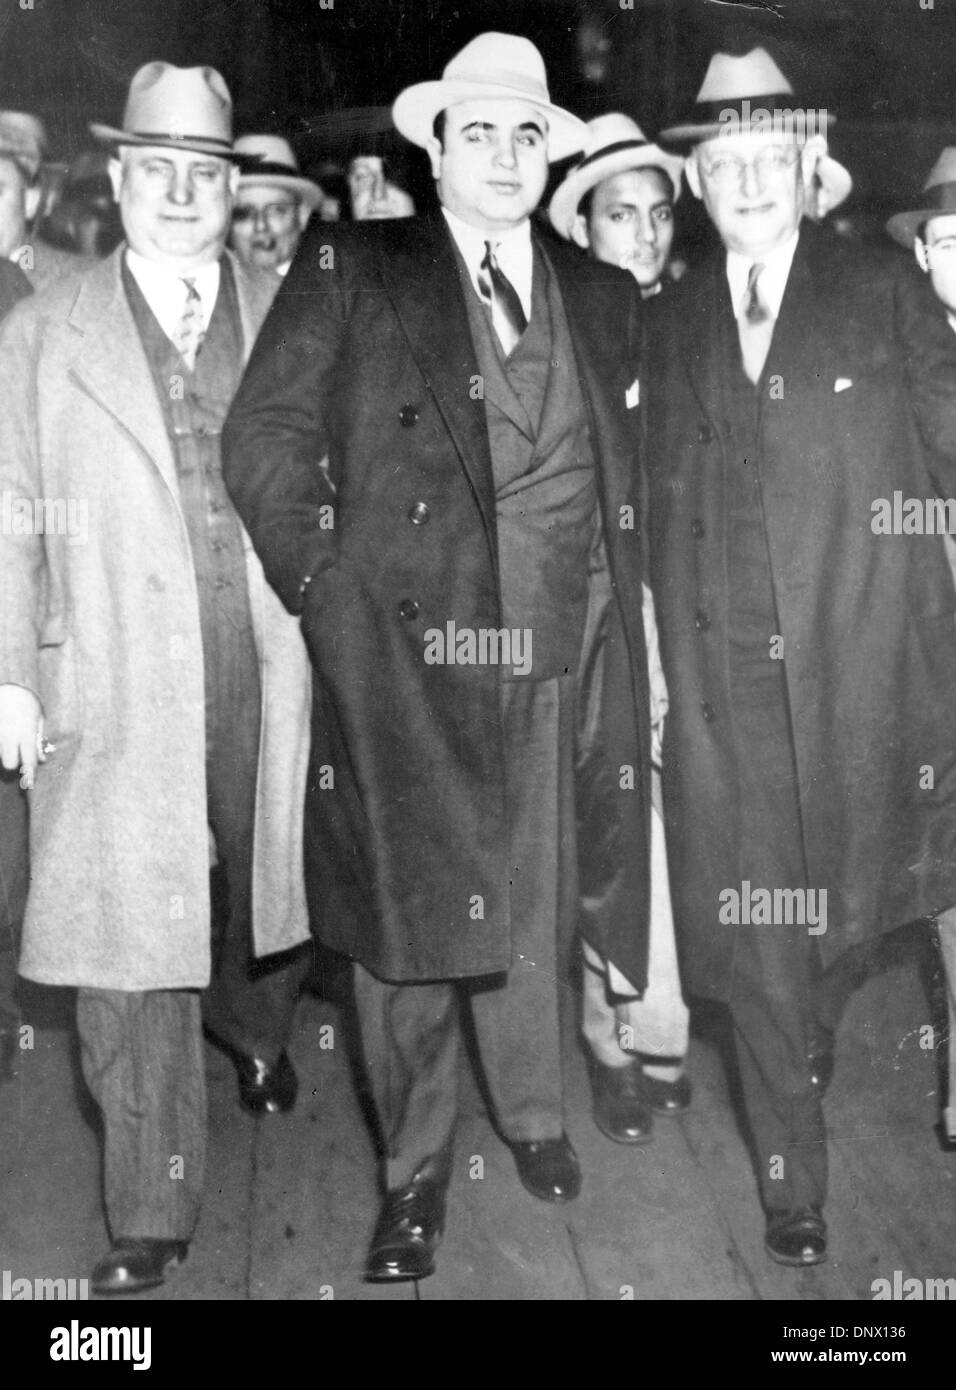 14 mai 1929 - New York, NY, États-Unis - Al Capone (C) avec MARSHALL LAUBENHEIMER (R) à New York. Al Capone est la marque de gangster et le plus grand symbole de l'effondrement de la loi et l'ordre dans les États-Unis au cours des années 1920, la prohibition. Capone avait un rôle de premier plan dans les activités illégales que Chicago a prêté sa réputation de ville sans foi ni loi. (Crédit Image : © KEYSTO Banque D'Images